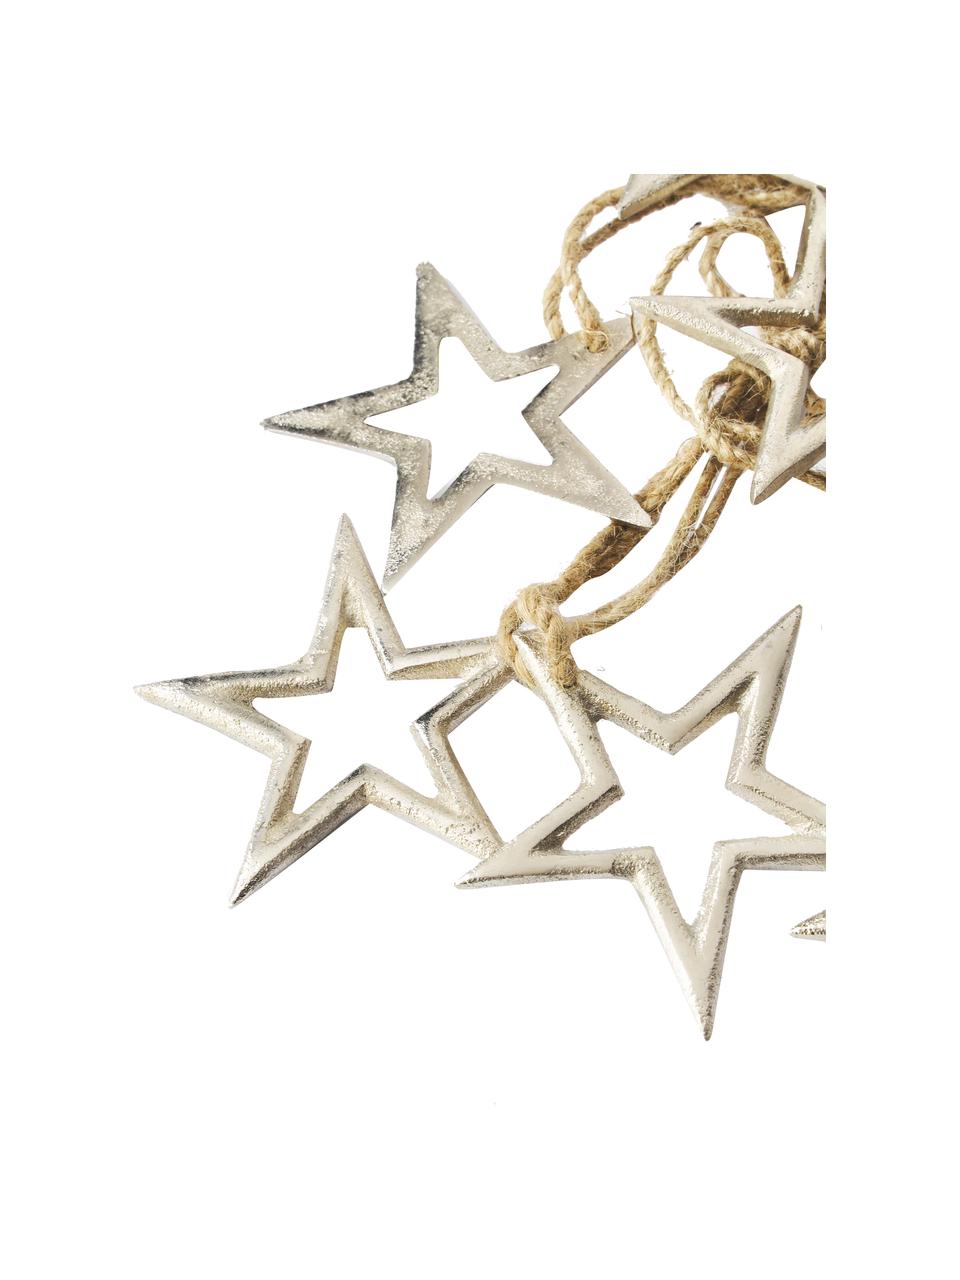 Guirnalda Stars, 100 cm, Adornos: aluminio, Plateado, L 100 cm